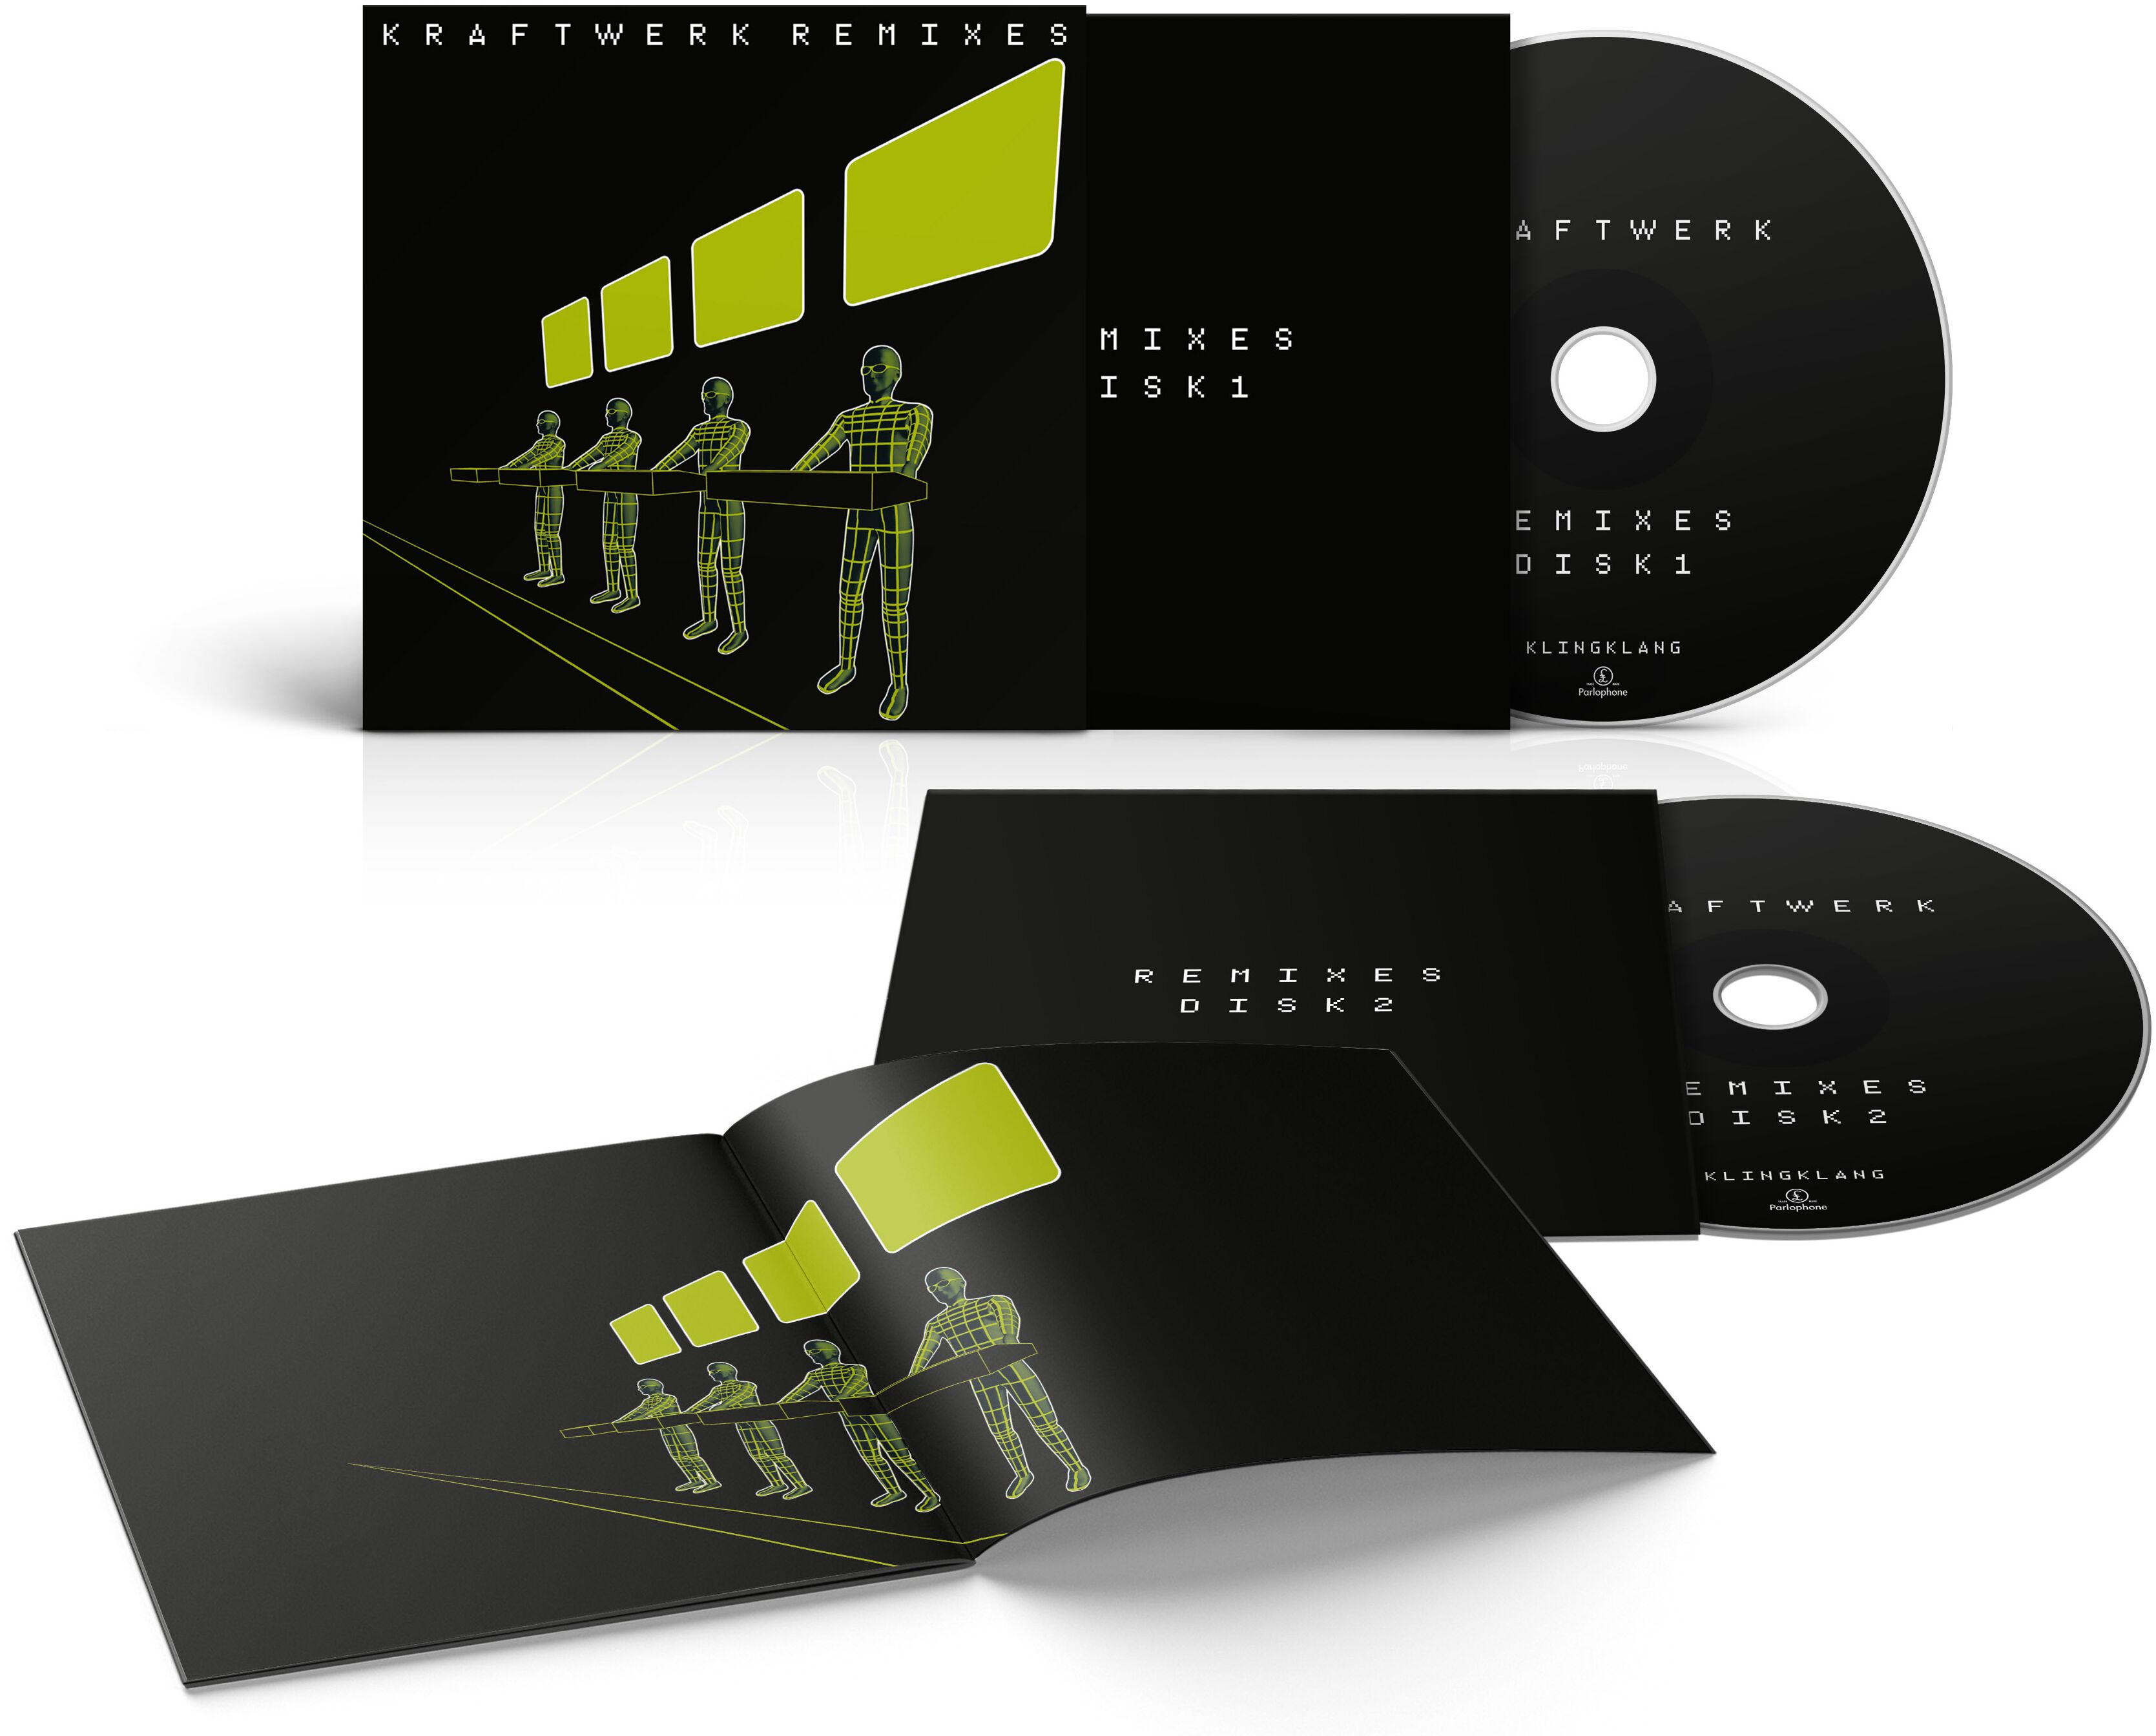 Image of Kraftwerk Remixes 2-CD Standard